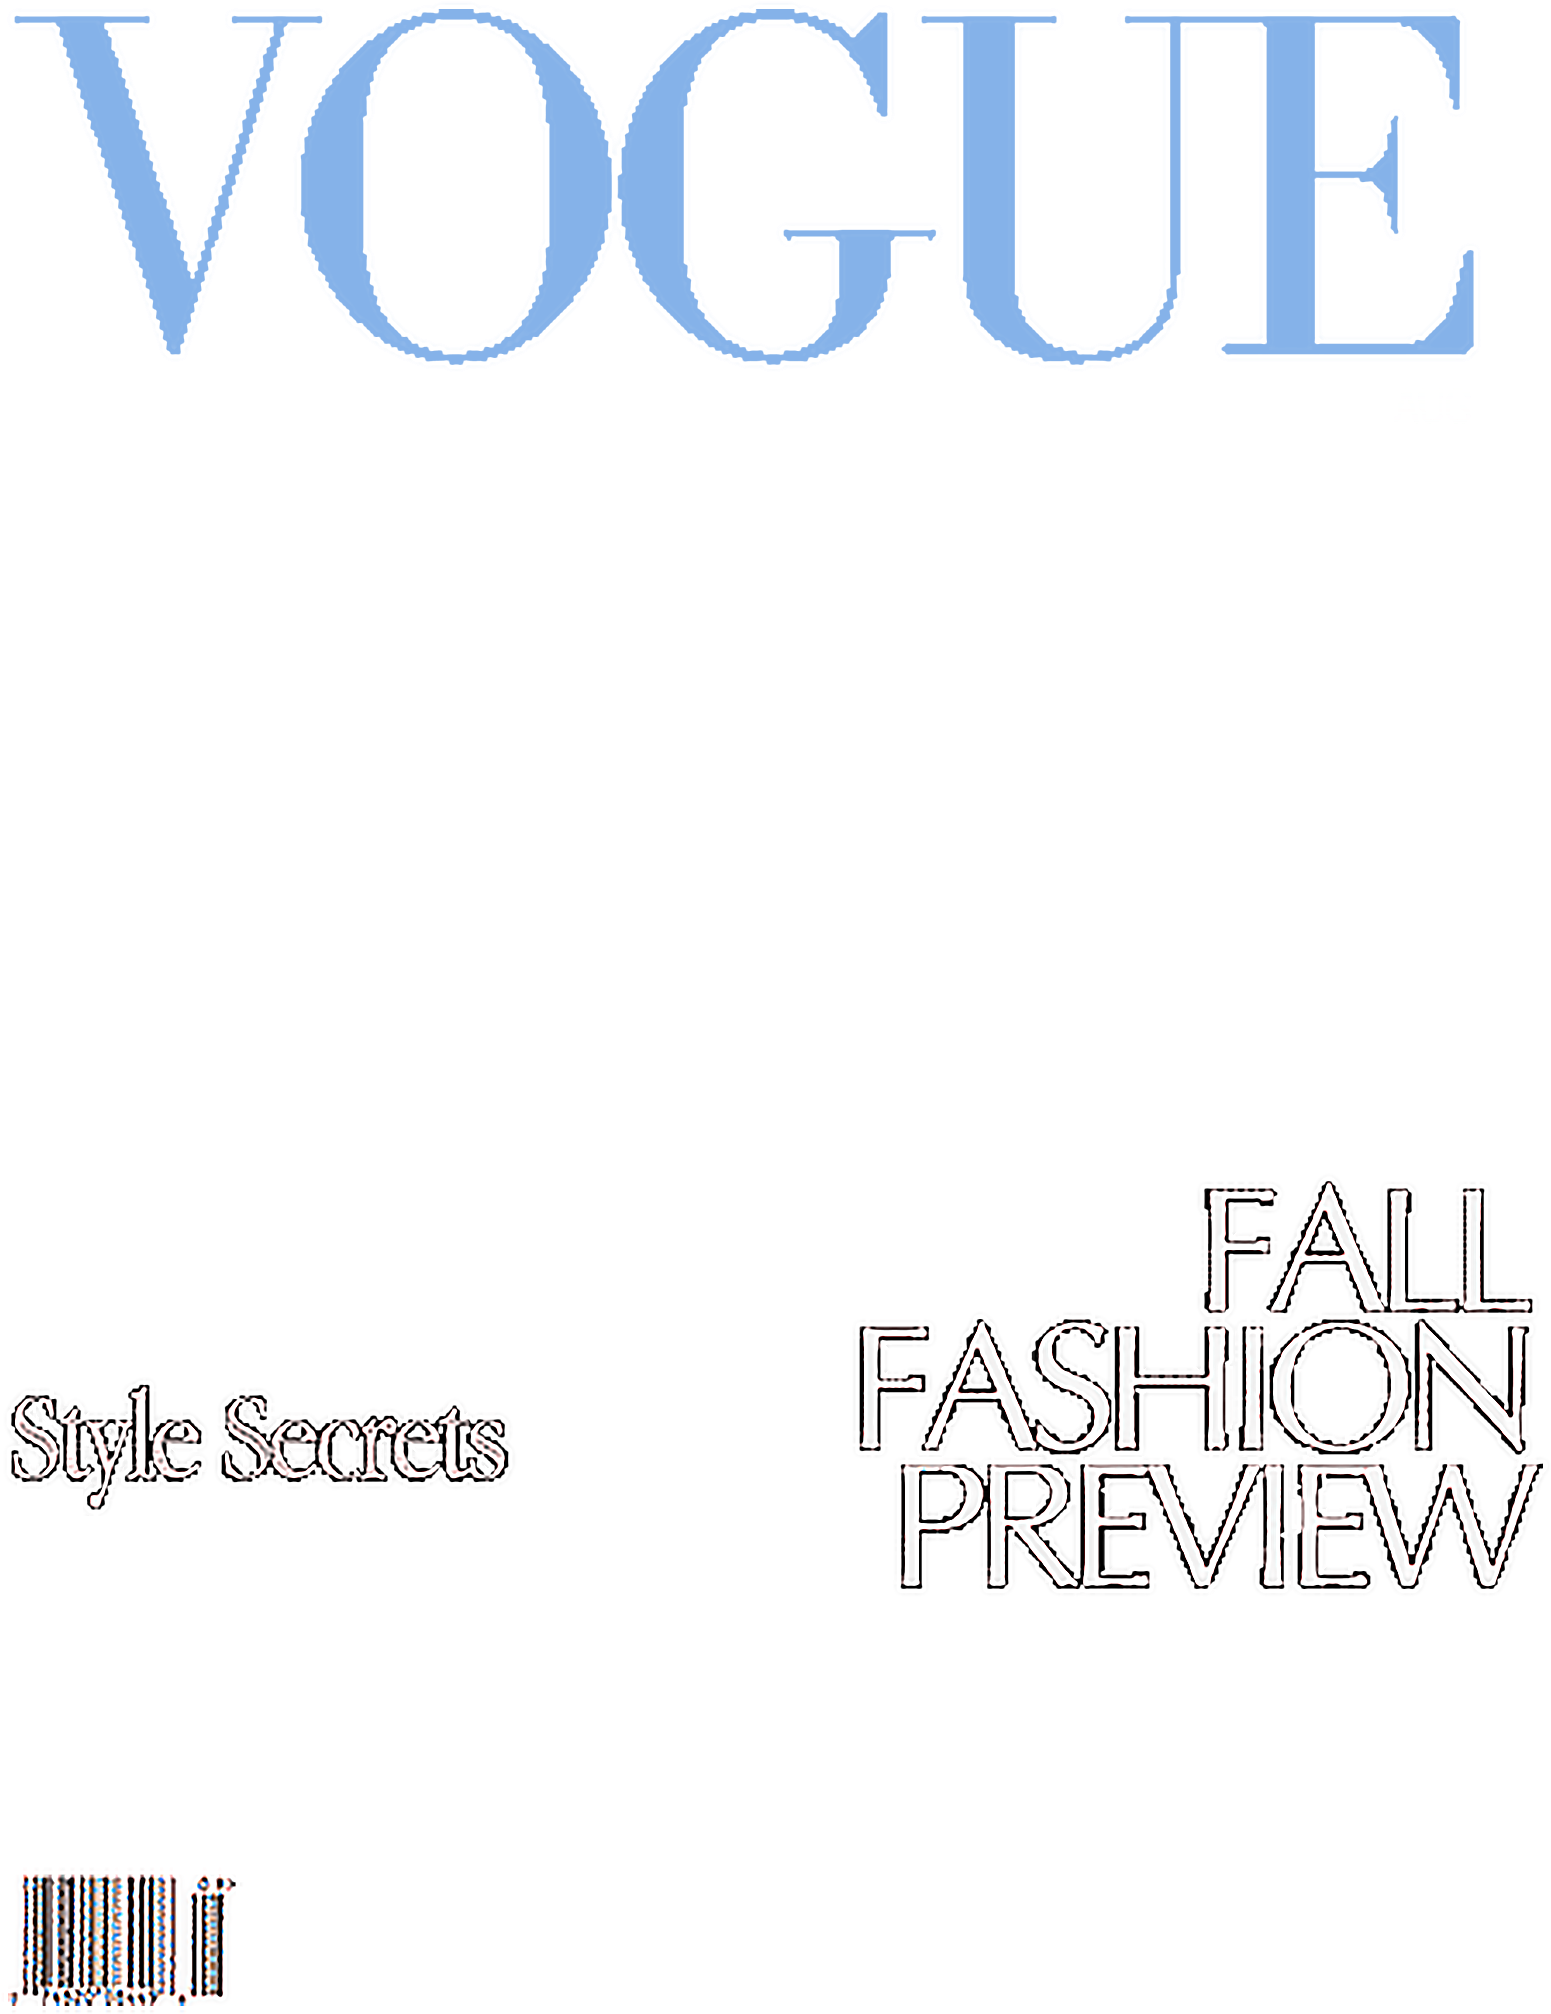 Transparent Vogue Cover Template